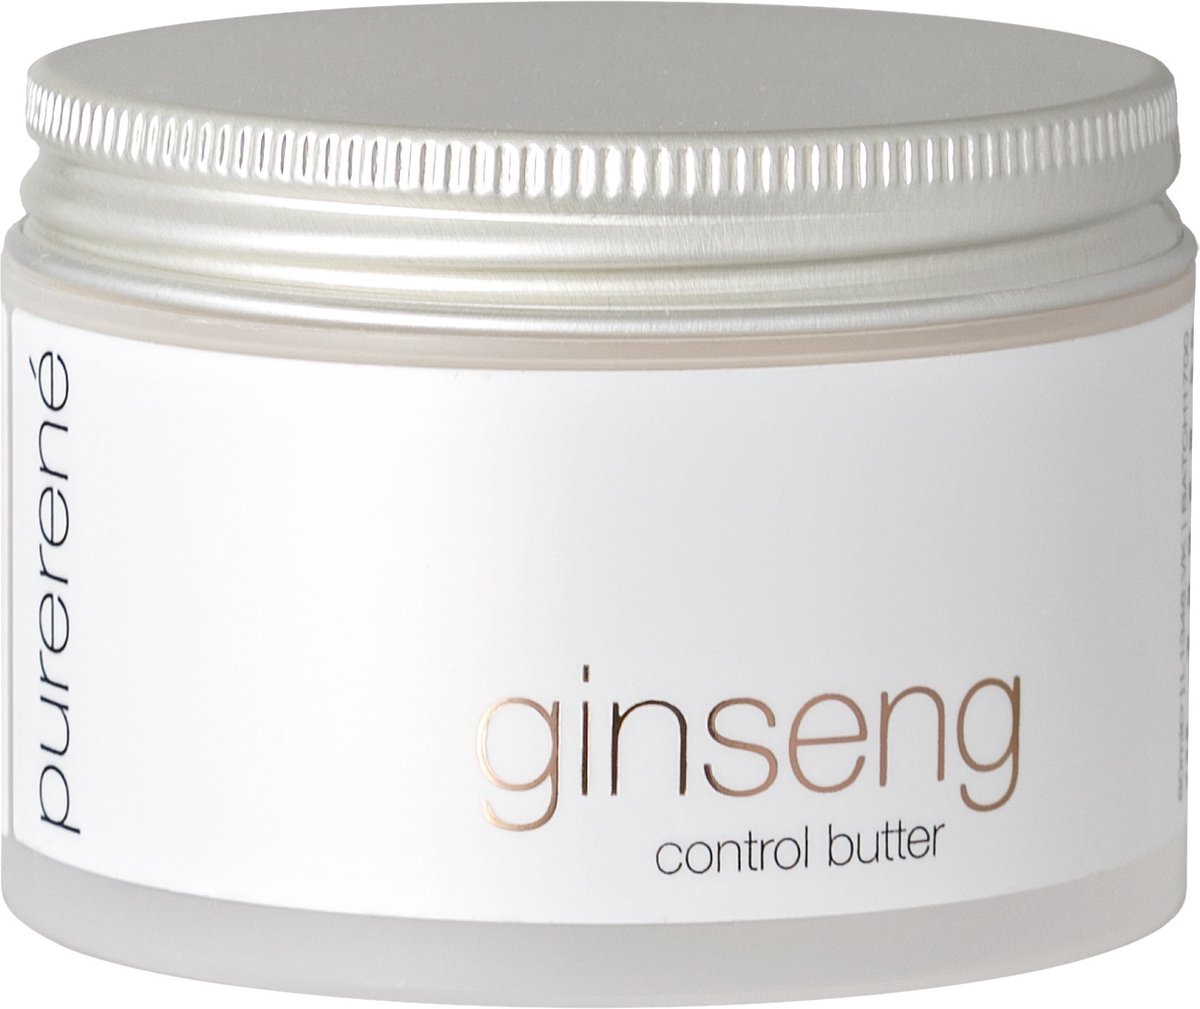 PureRené Ginseng control butter 80ML - René Professional